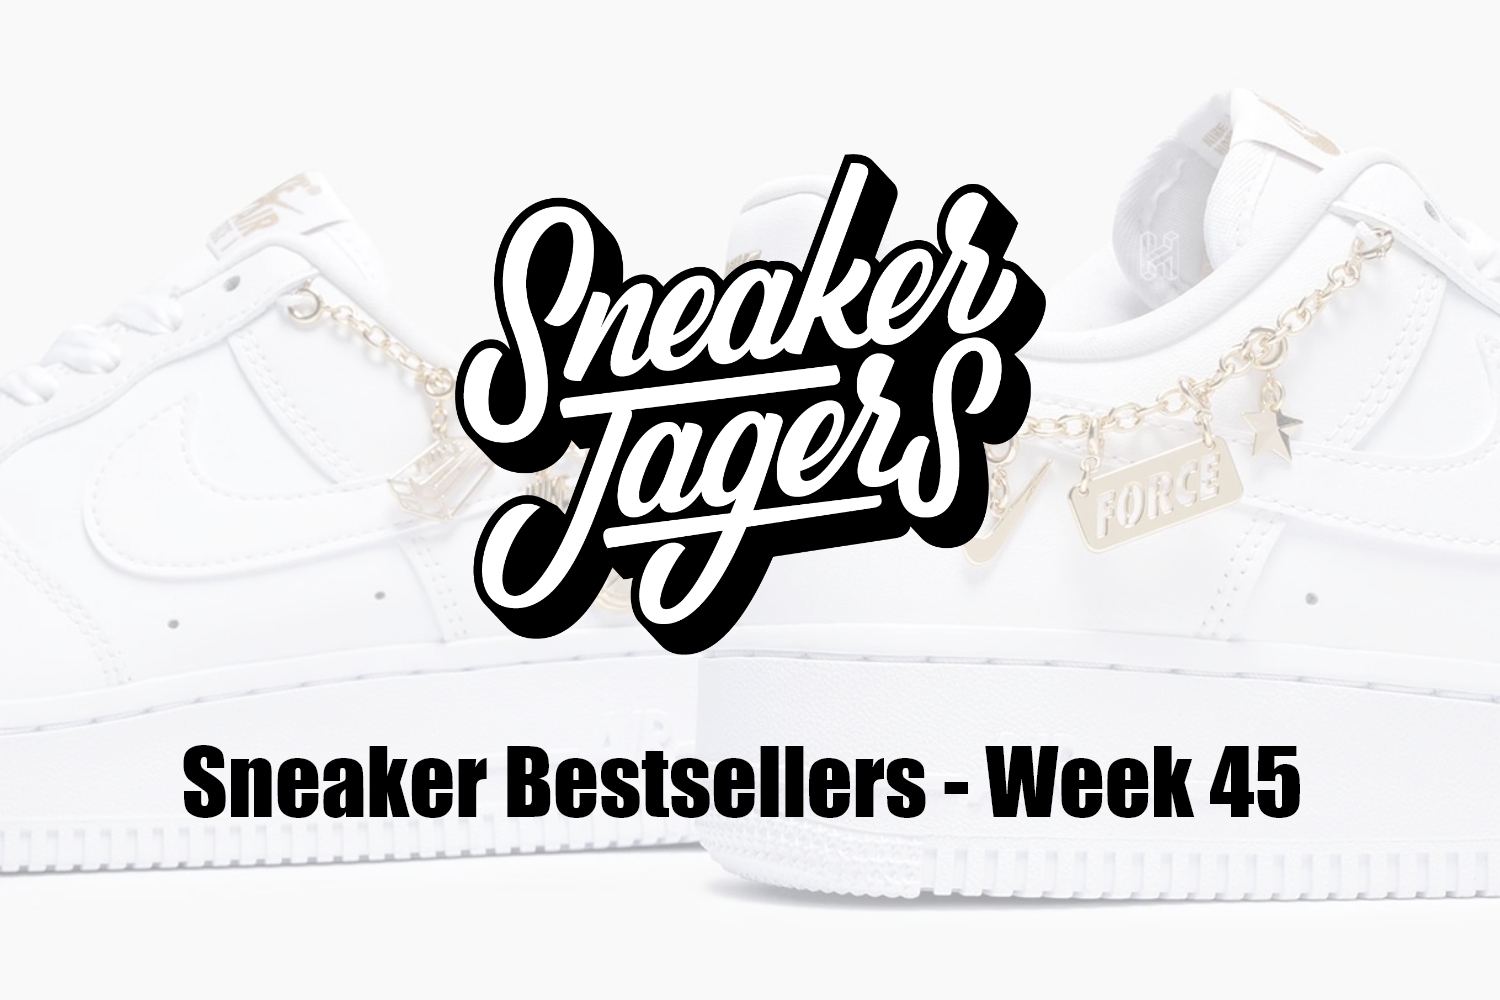 Our Sneaker Bestsellers - Week 45 - What's on Trend 📈